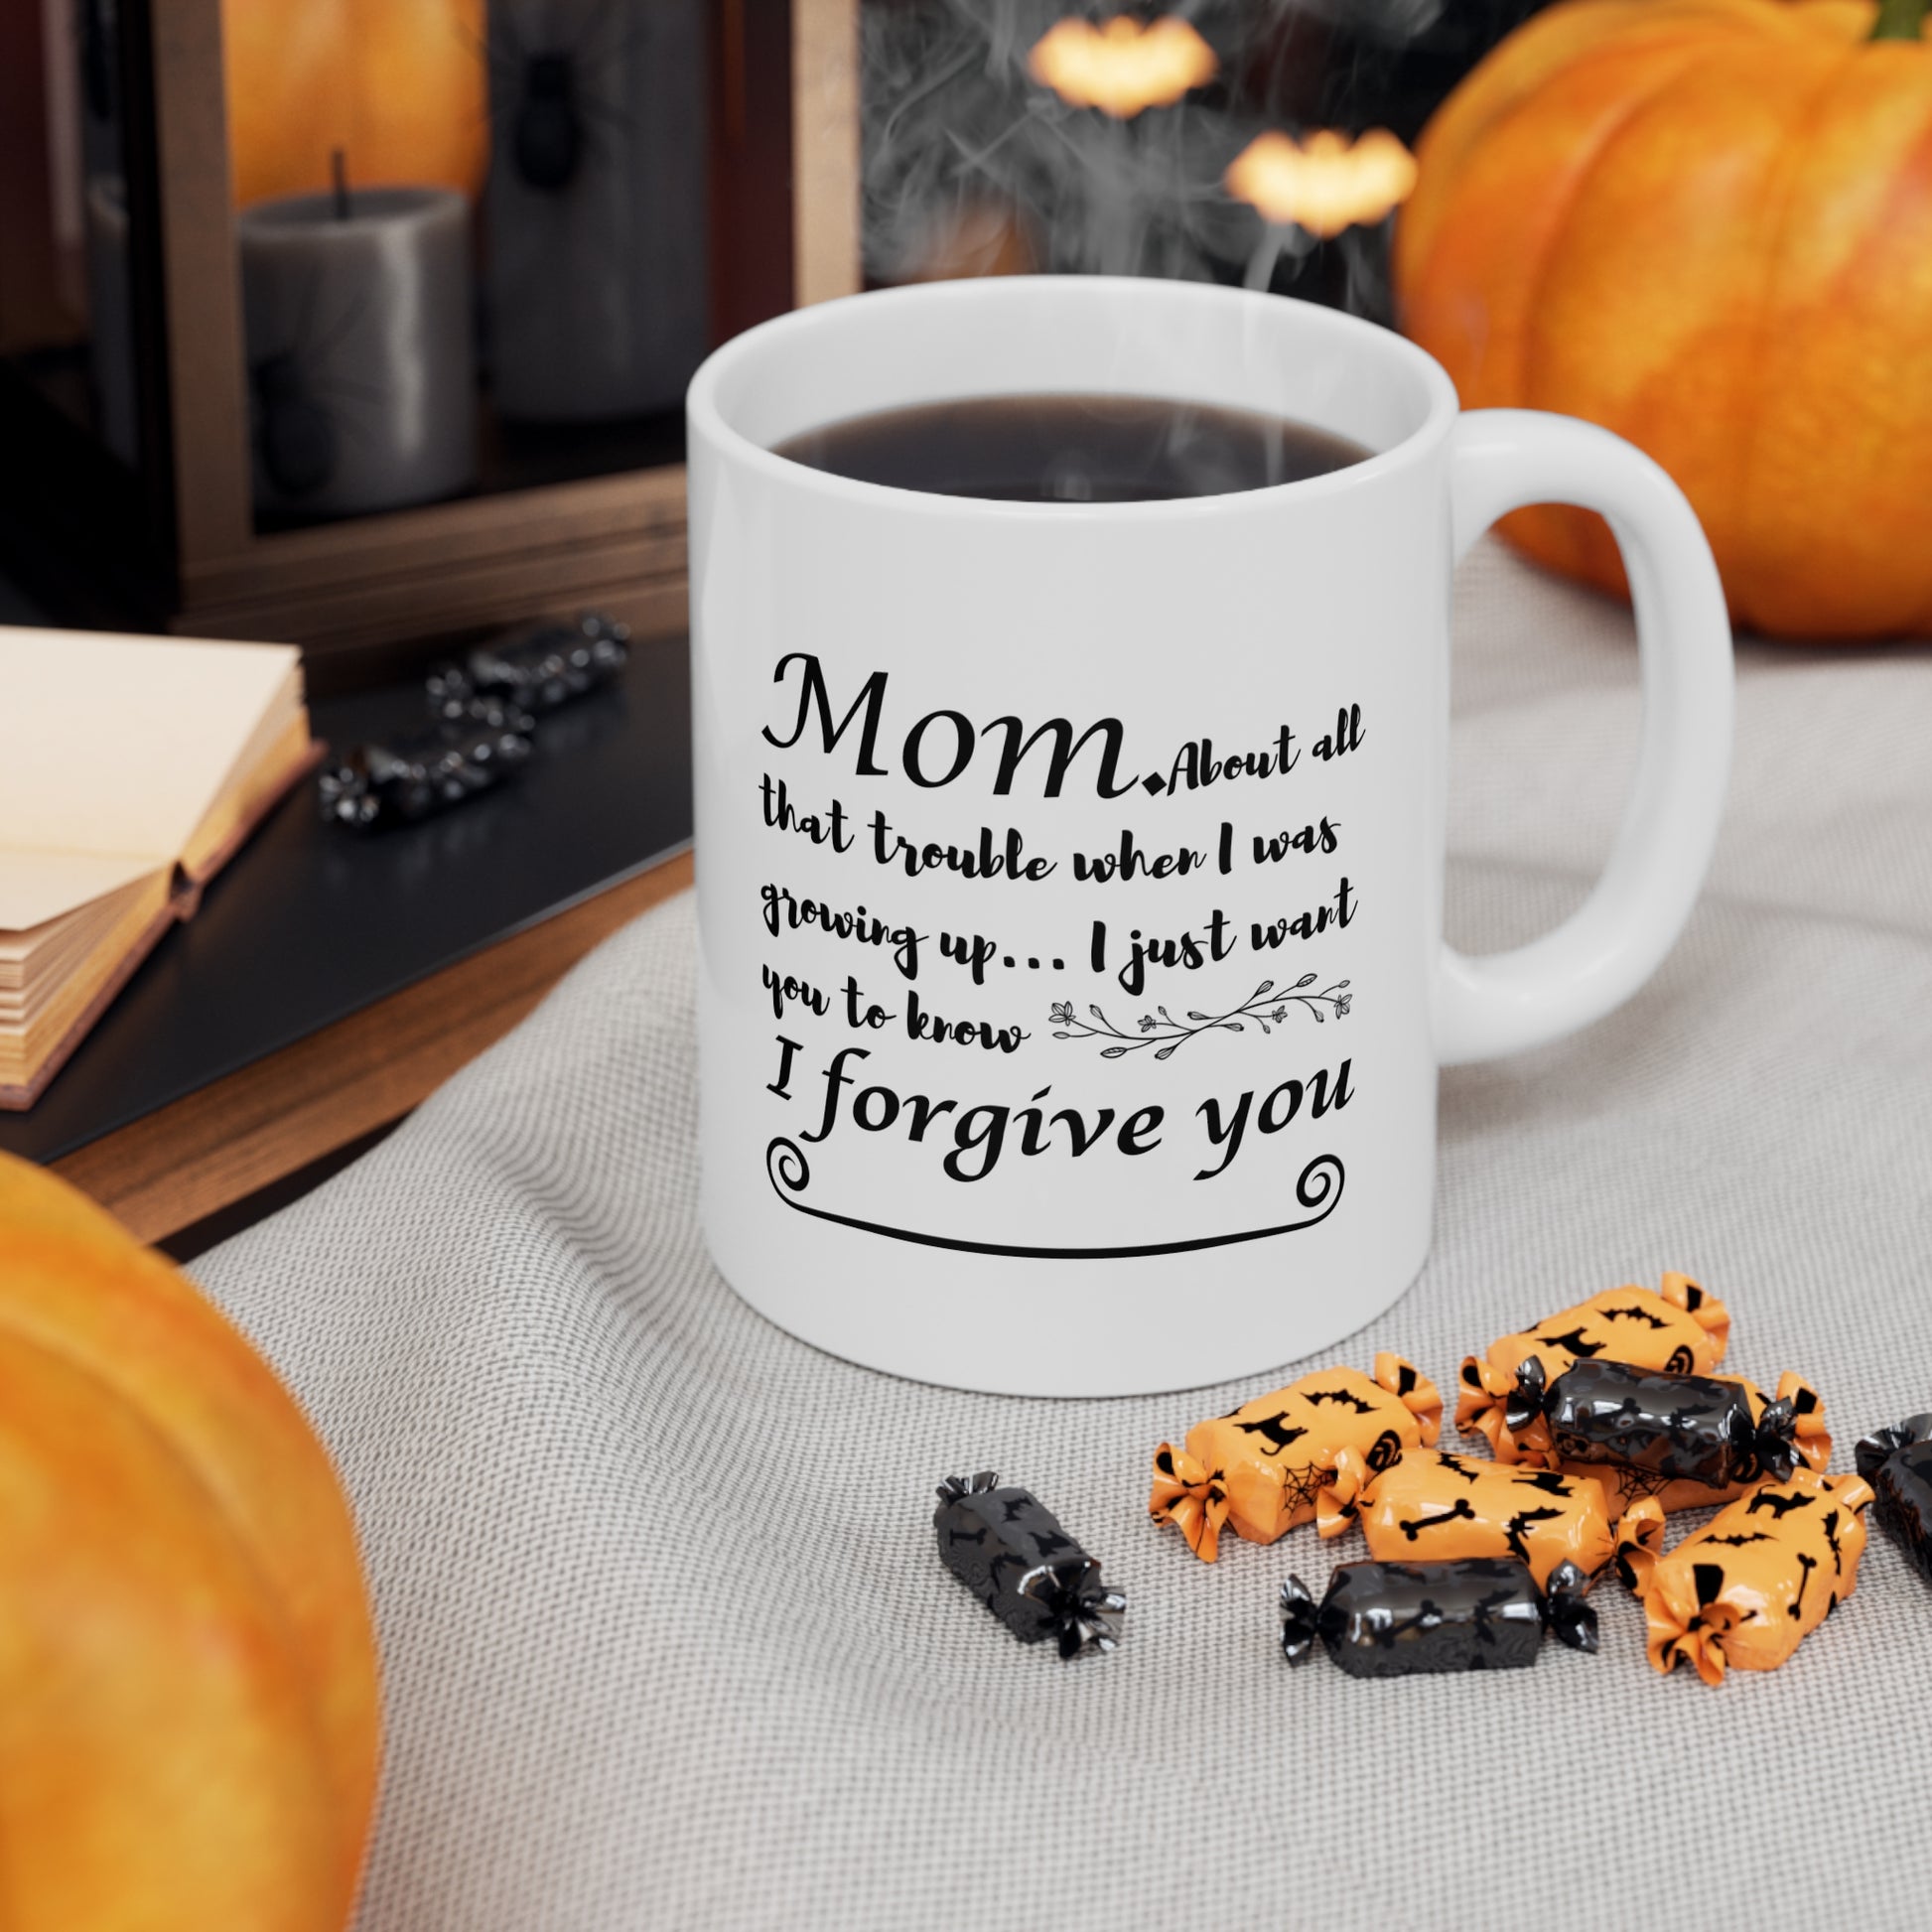 I Forgive You - Coffee Mug for Mom, Ceramic 11oz Mug for Mother's Day